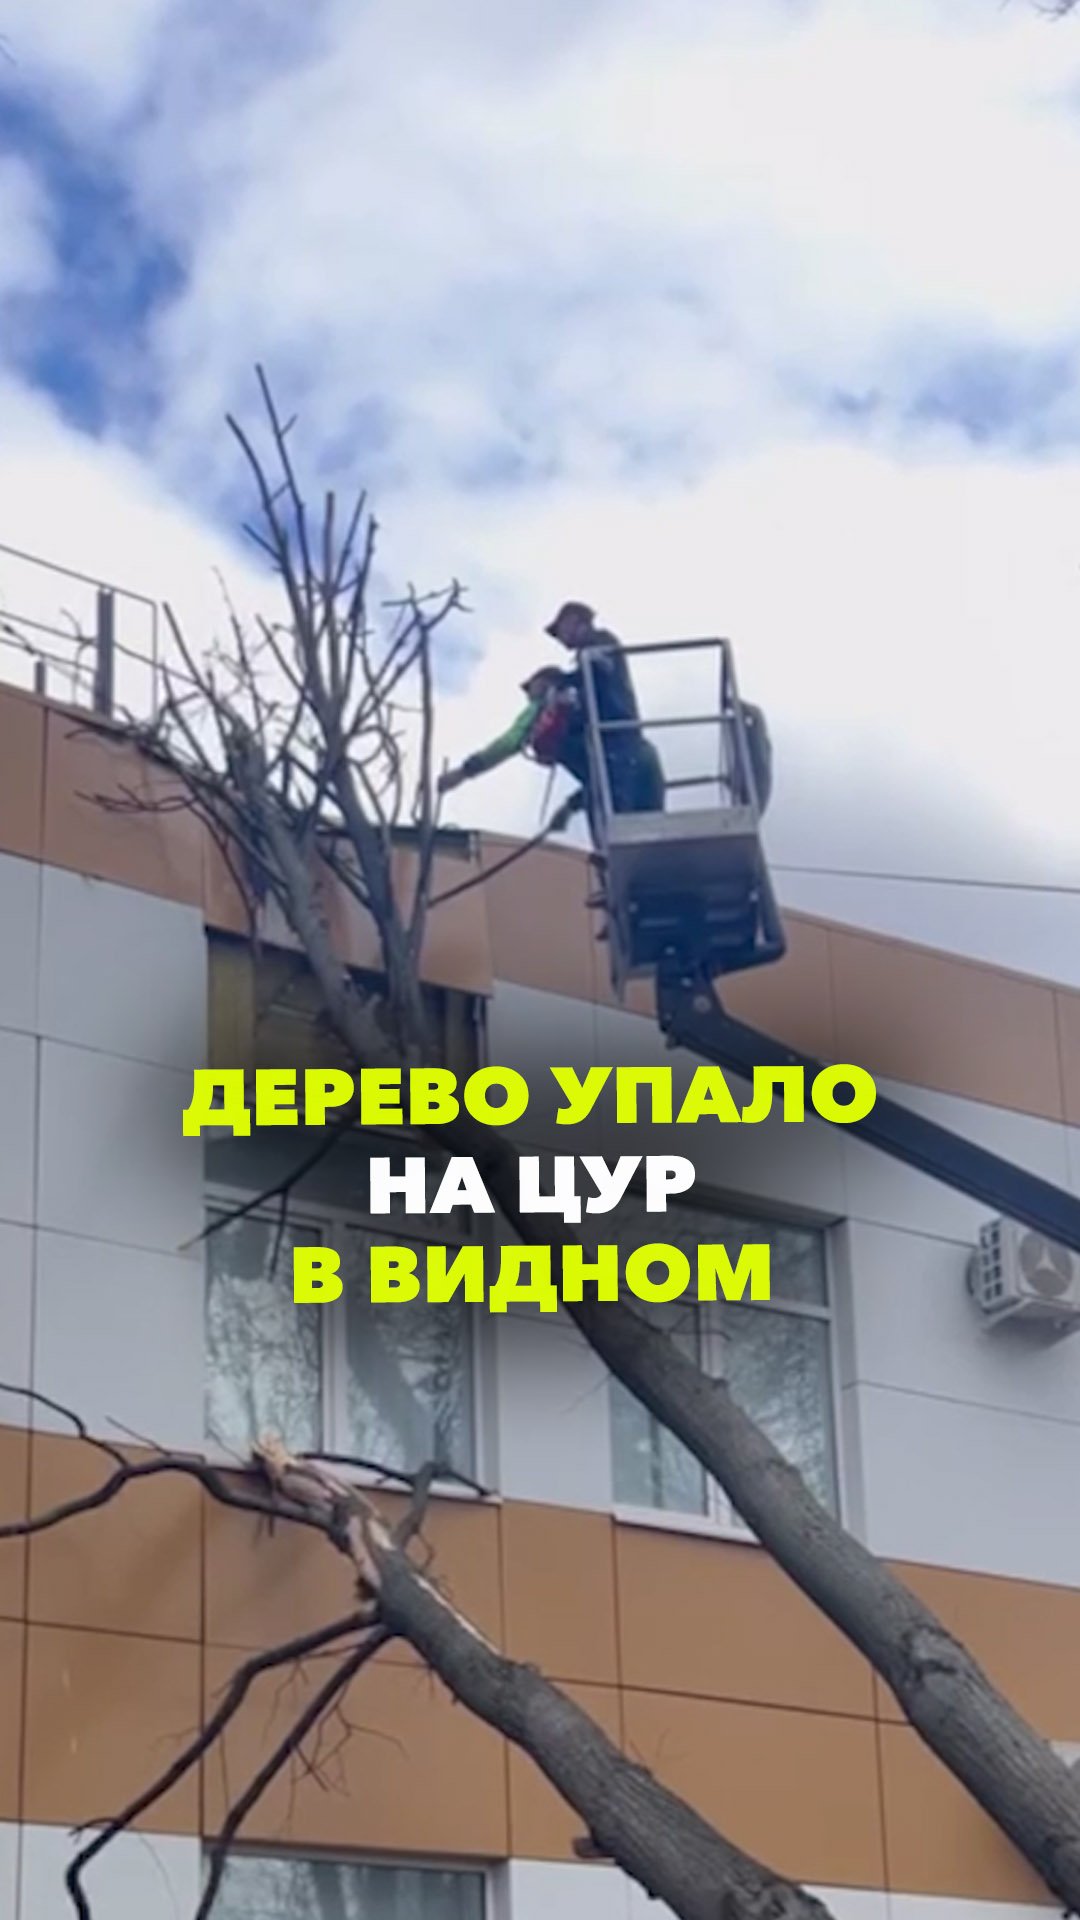 Из-за сильного ветра дерево упало на здание ЦУР в Видном